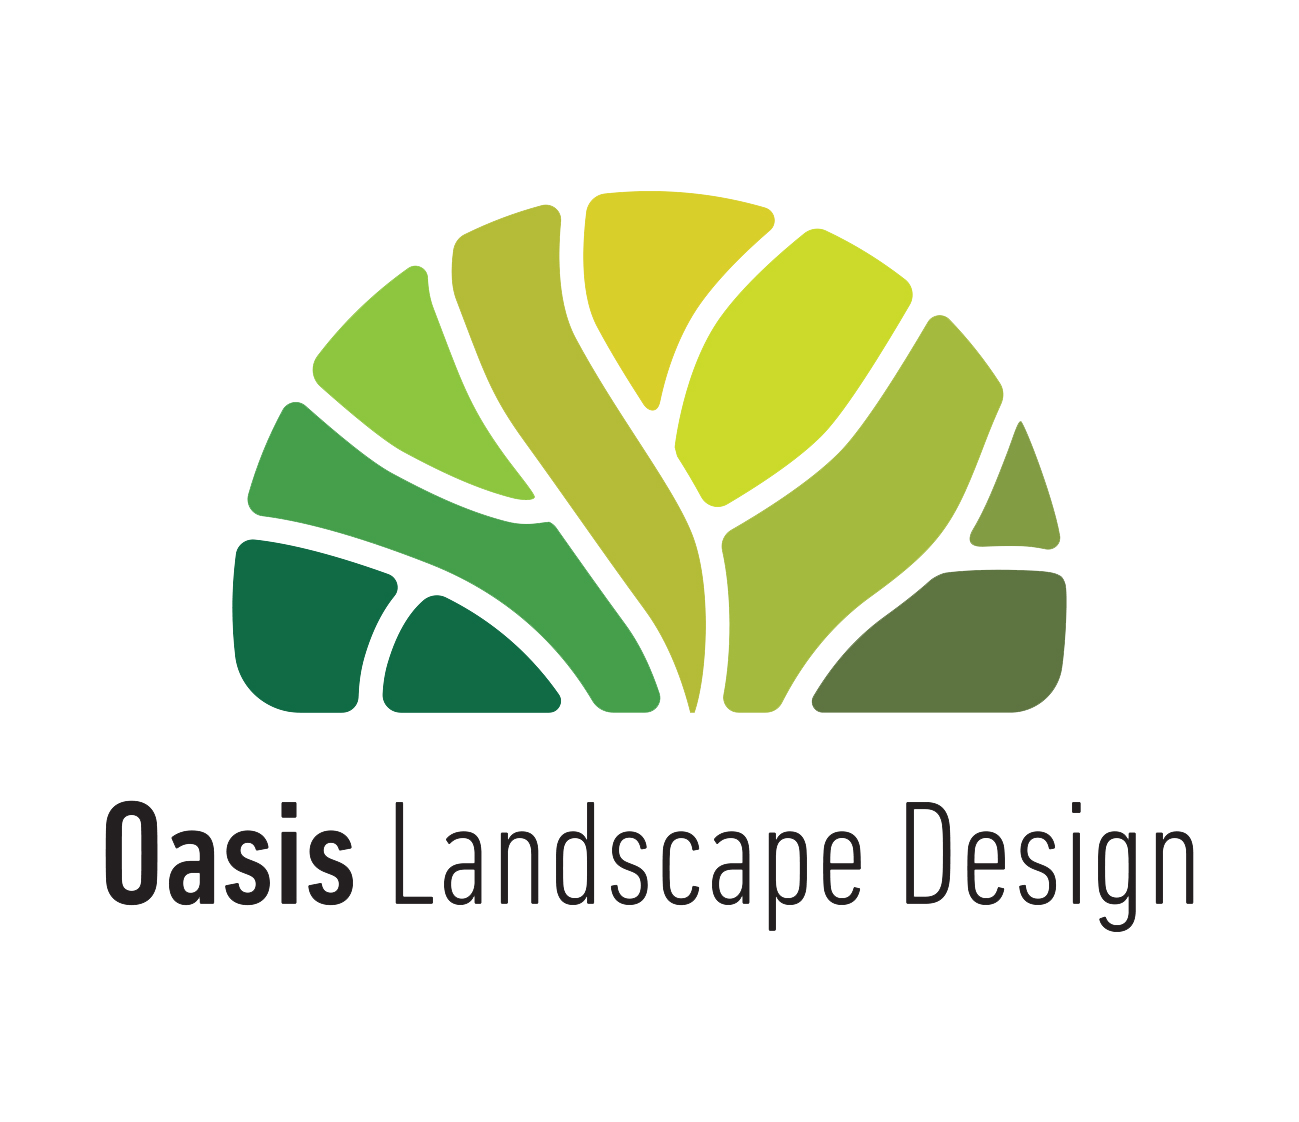 Oasis Landscape Design